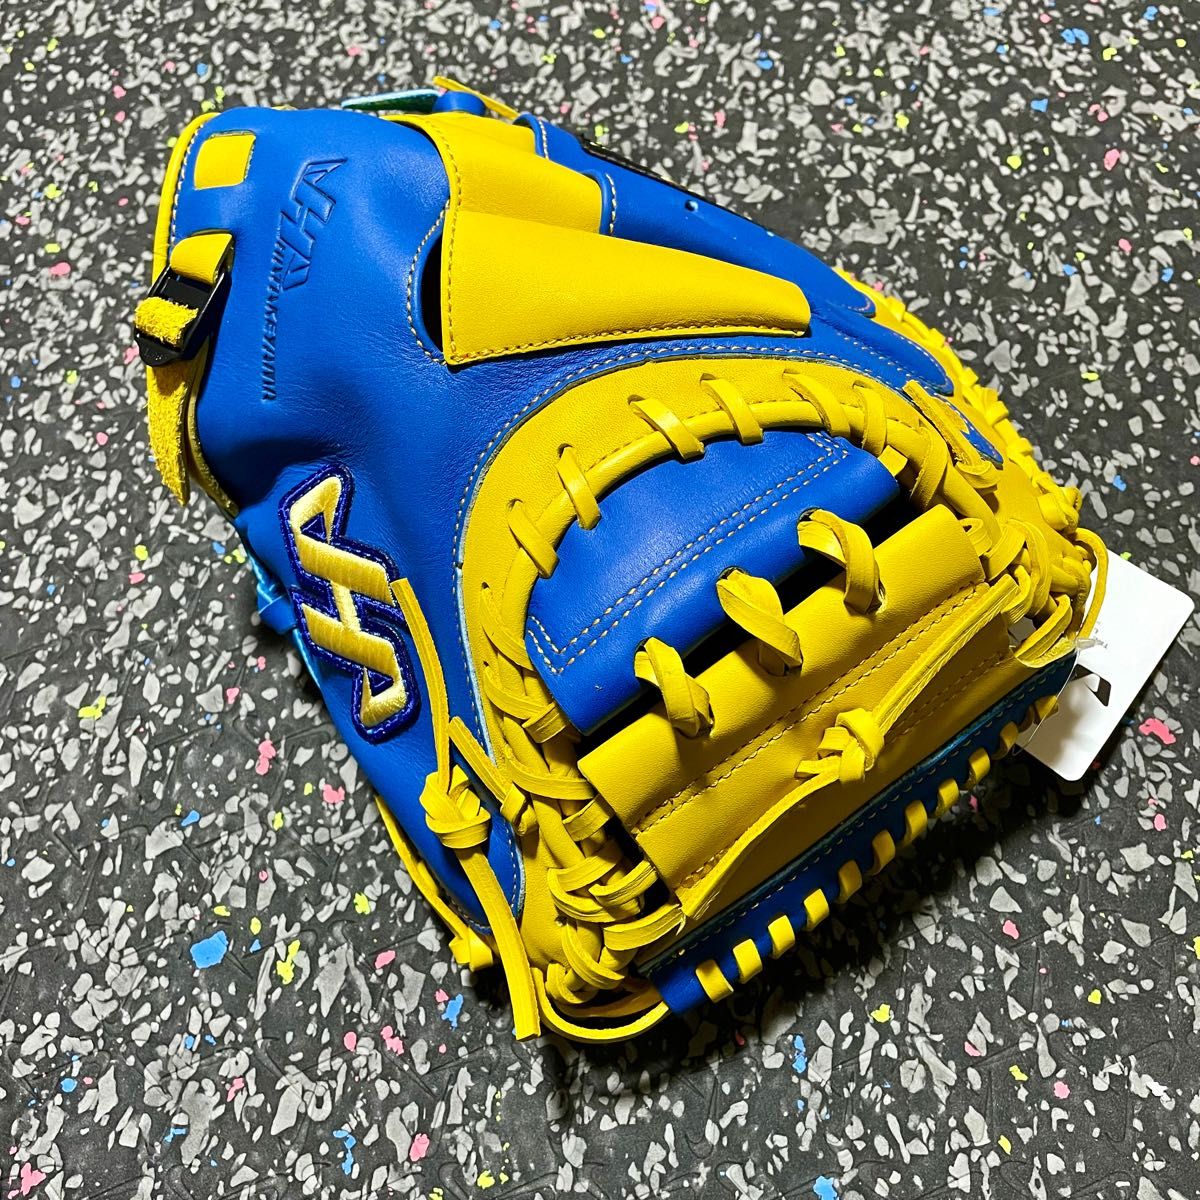 新品 ハタケヤマ 台湾製 キャッチャーミット 硬式用 捕手用 グローブ 硬式野球 グラブ HATAKEYAMA ブルー イエロー